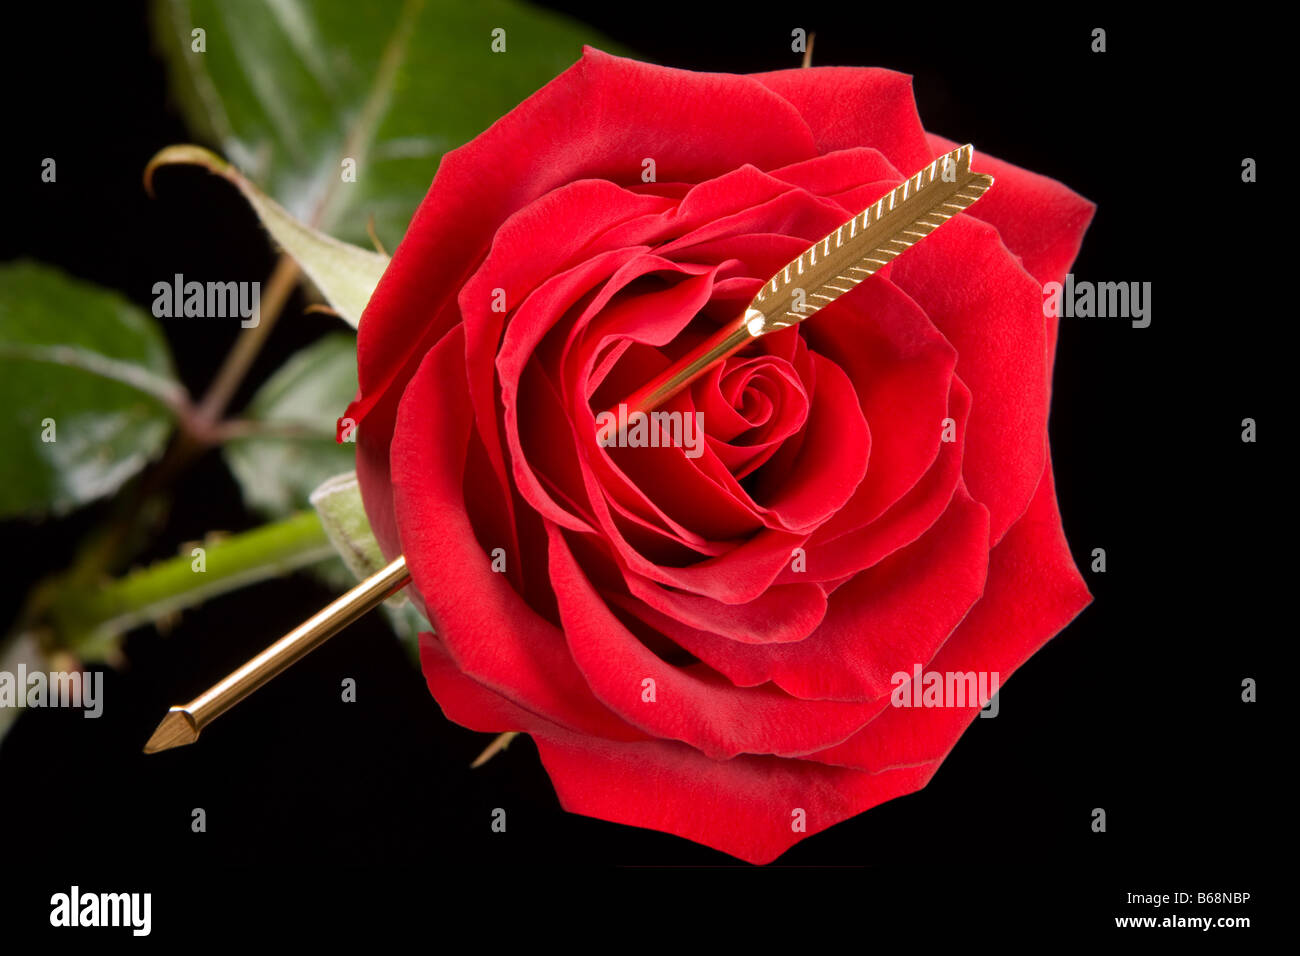 Flèche de Cupidon percé à travers le coeur d'une rose rouge Banque D'Images